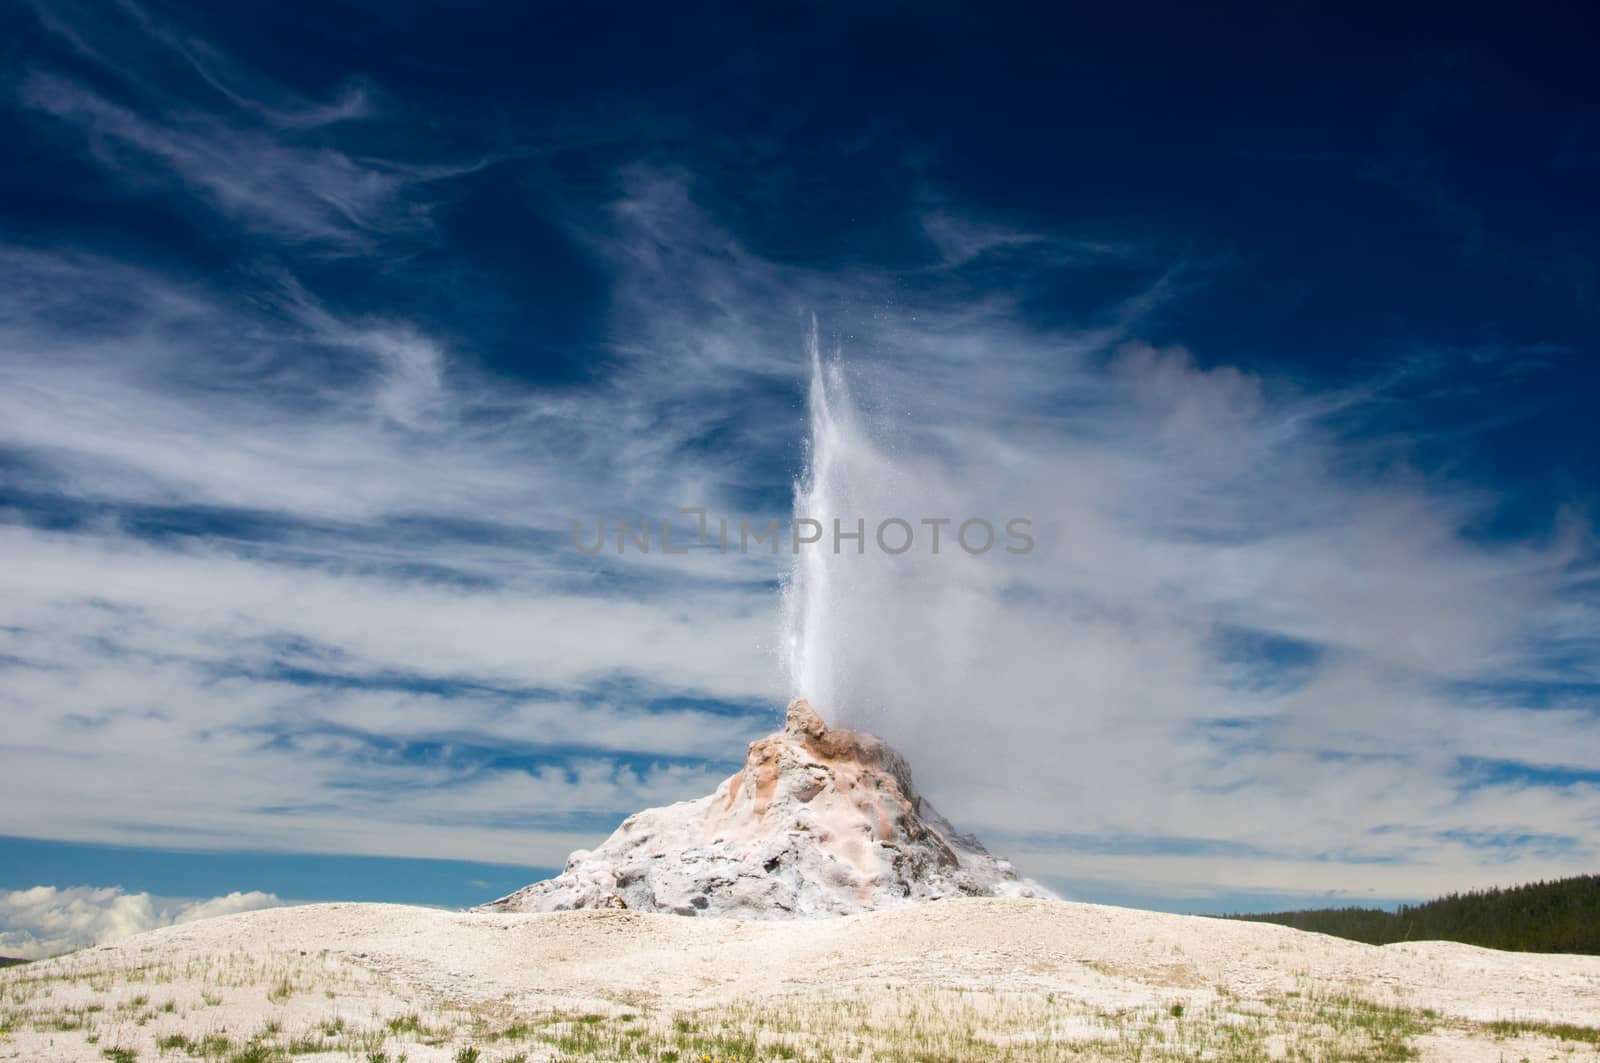 Eruption of White Dome Geyser  by emattil